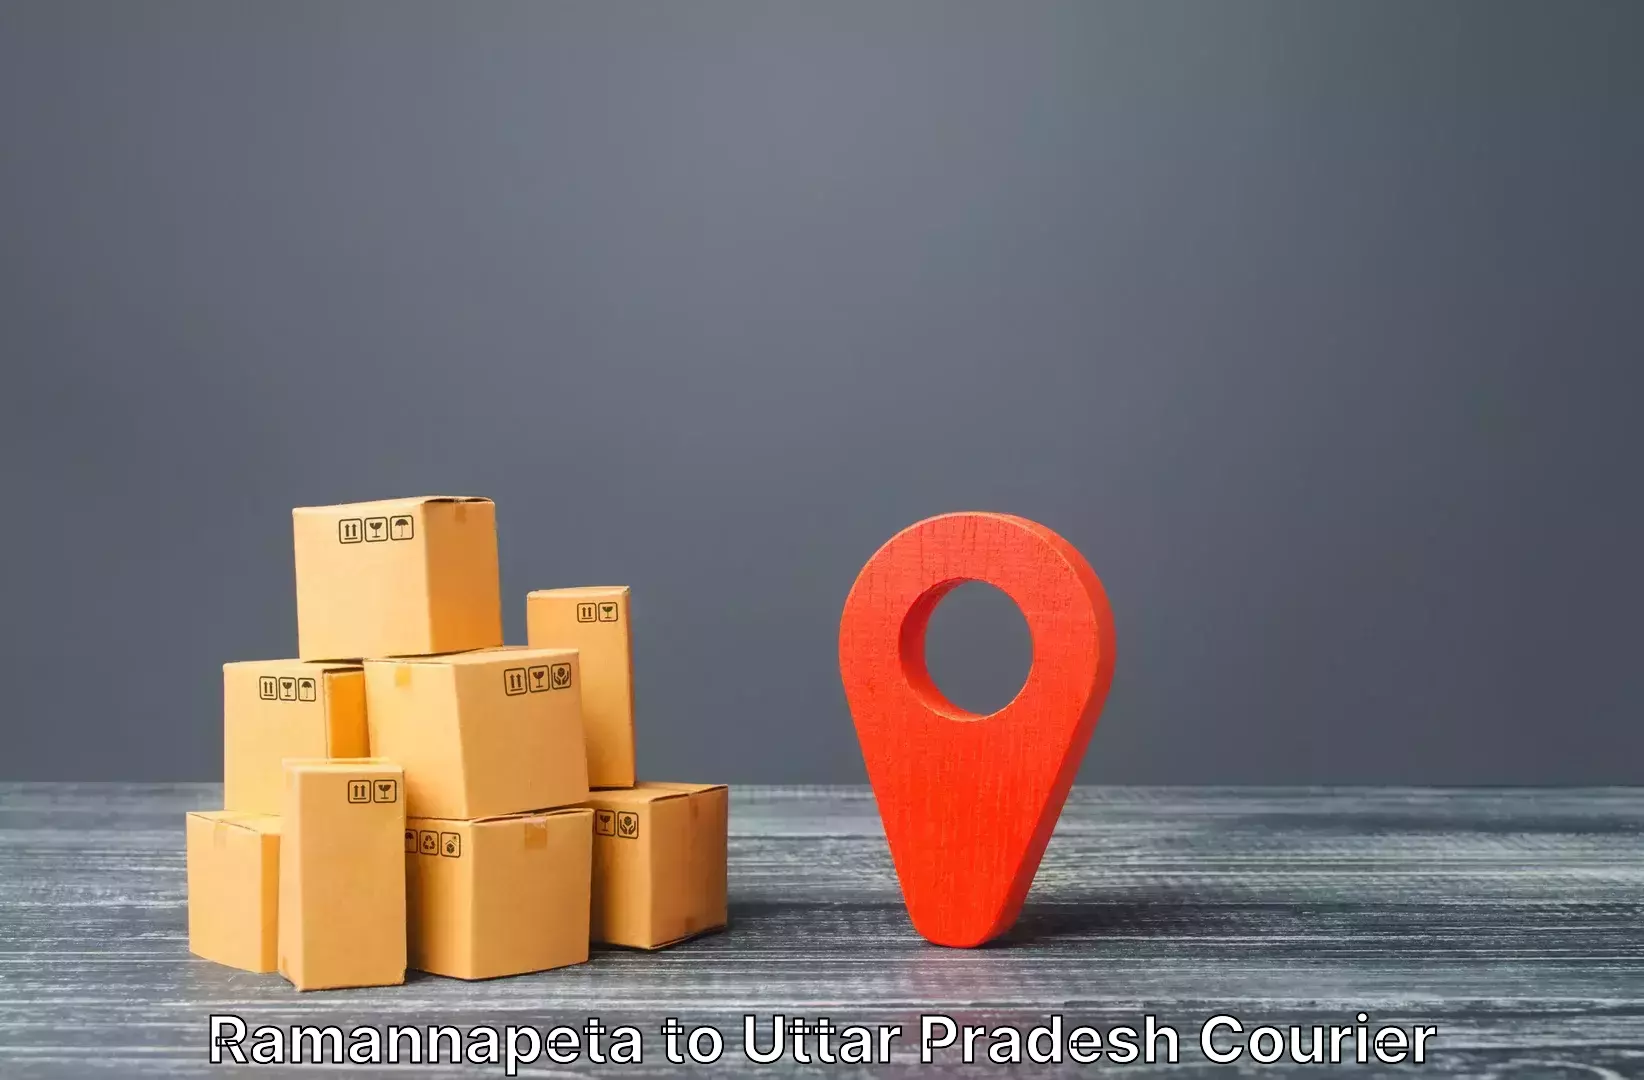 Customized luggage delivery Ramannapeta to Rudhauli